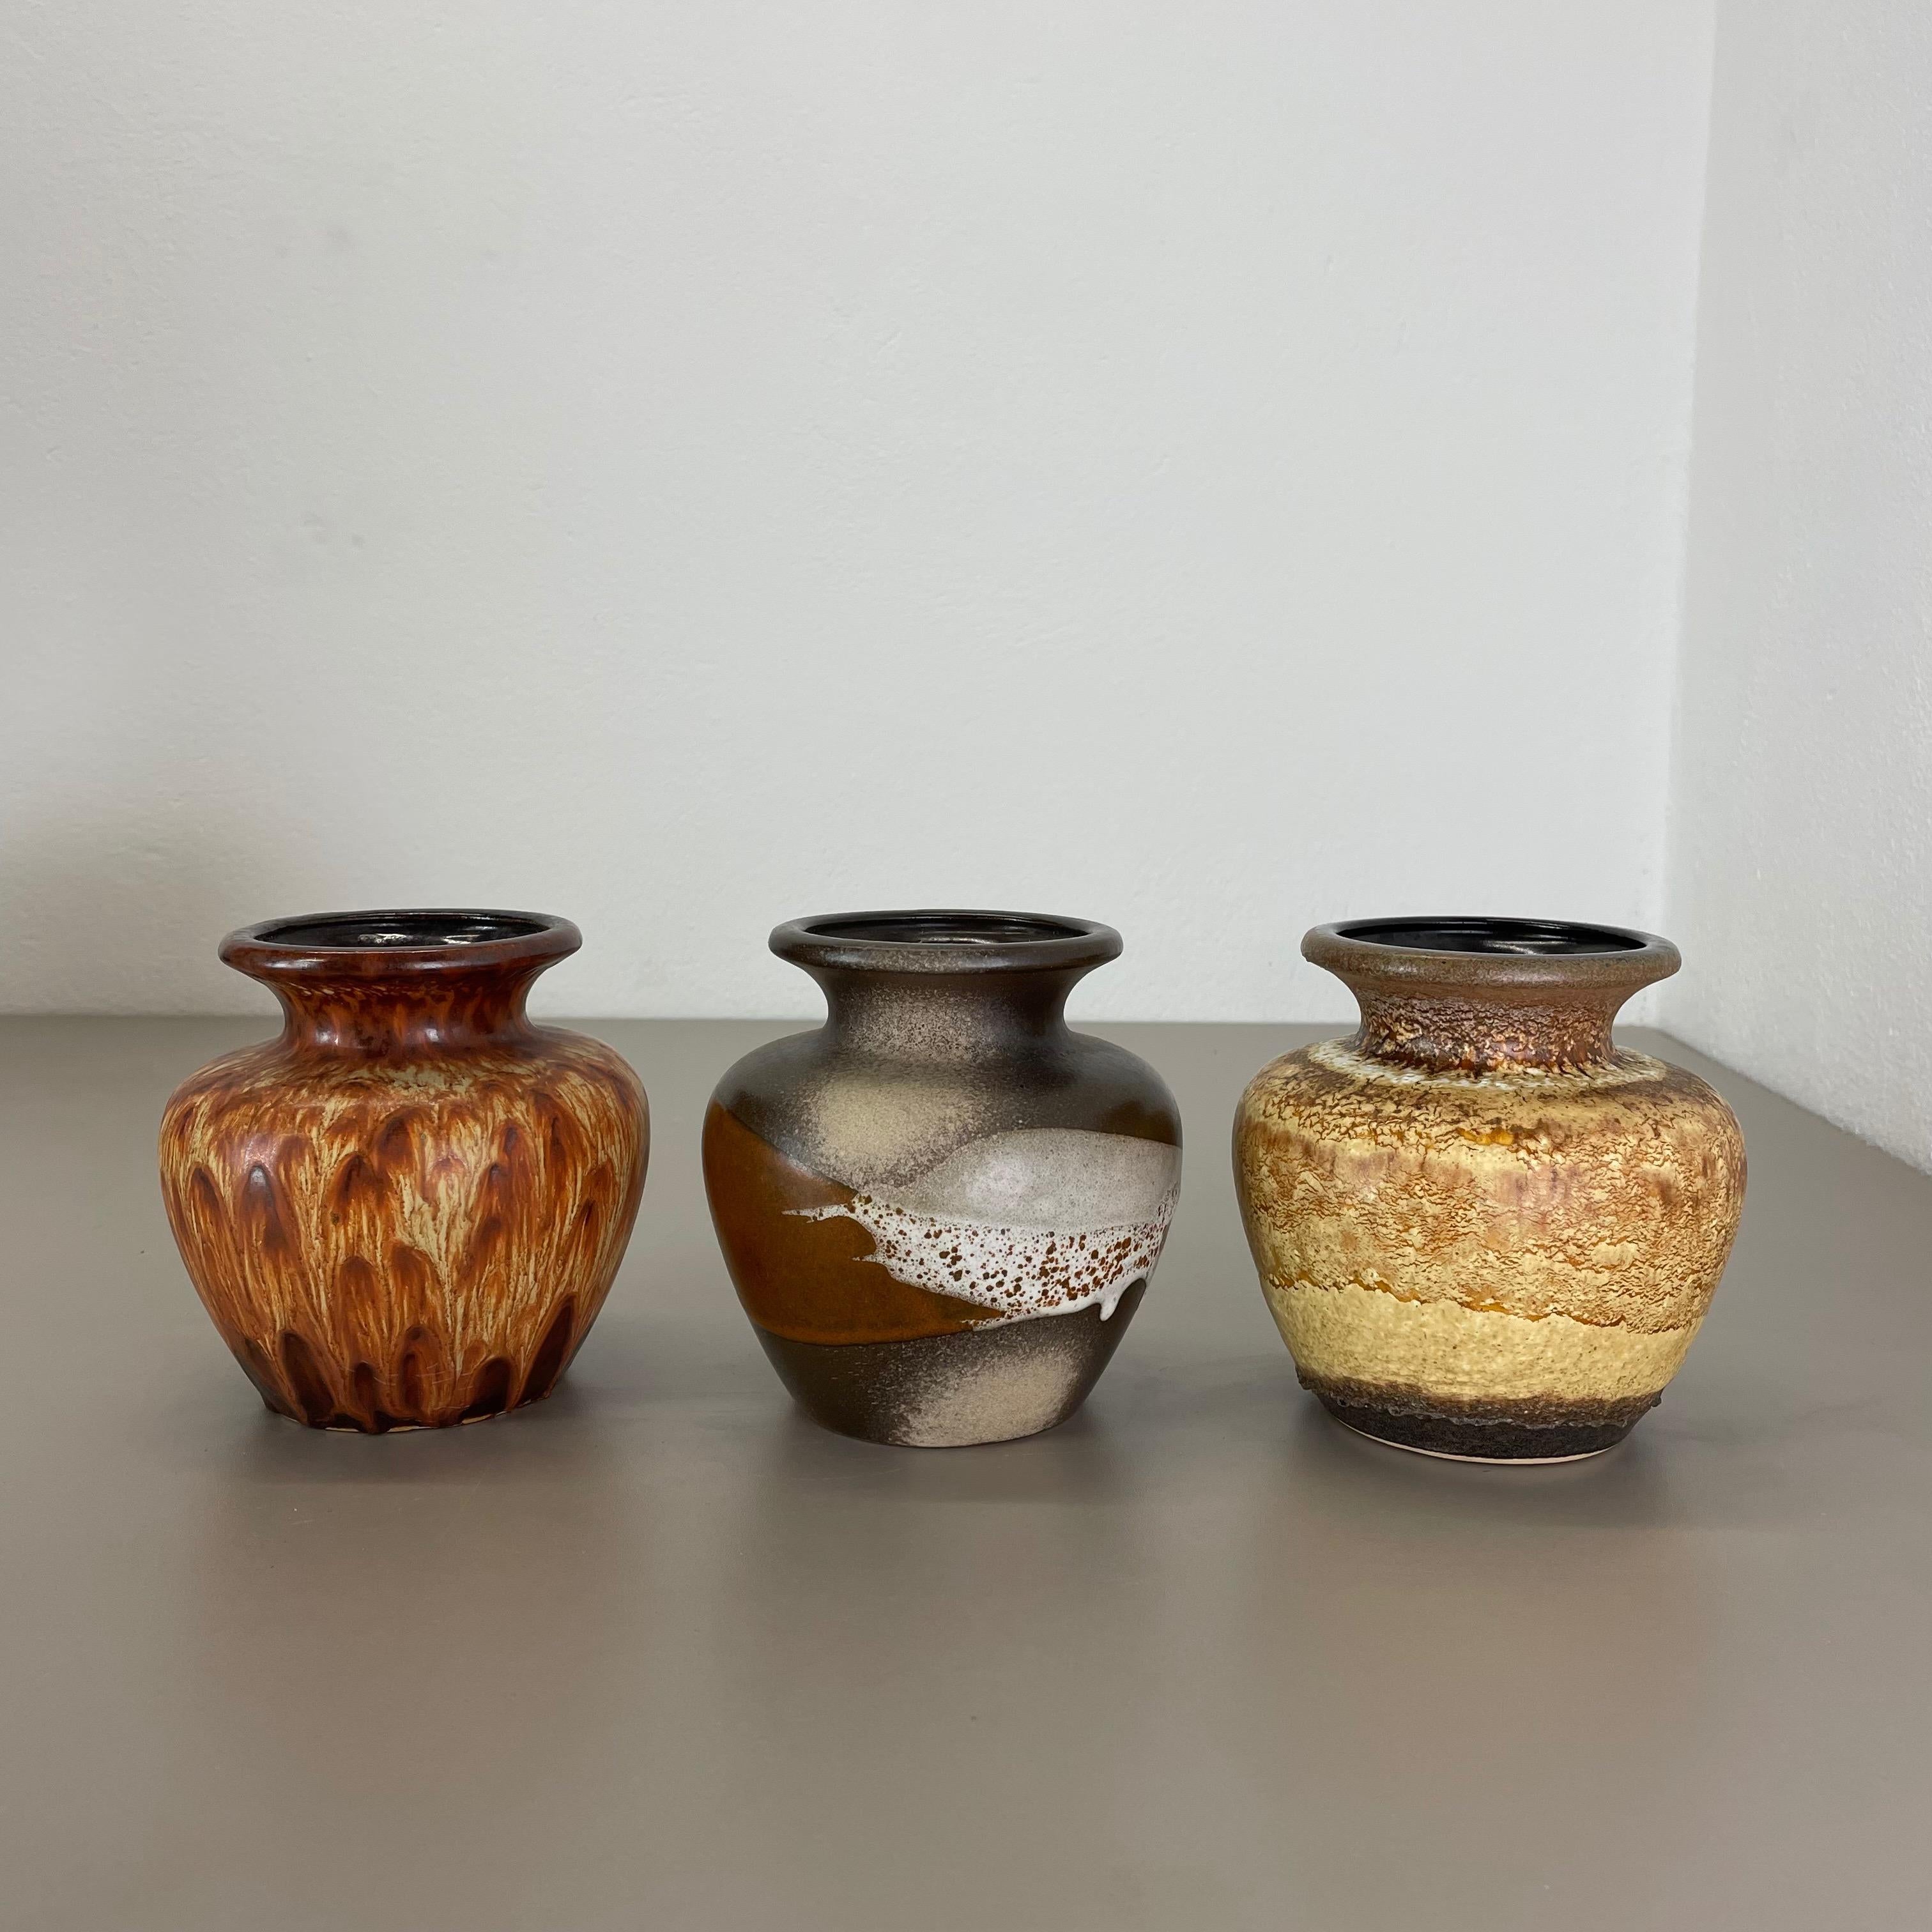 Artikel:

Satz von drei fetten Lavakunstvasen


Produzent:

Scheurich, Deutschland



Jahrzehnt:

1970s


Diese originalen Vintage-Vasen wurden in den 1970er Jahren in Deutschland hergestellt. Sie ist aus Keramik in fetter Lava-Optik gefertigt.